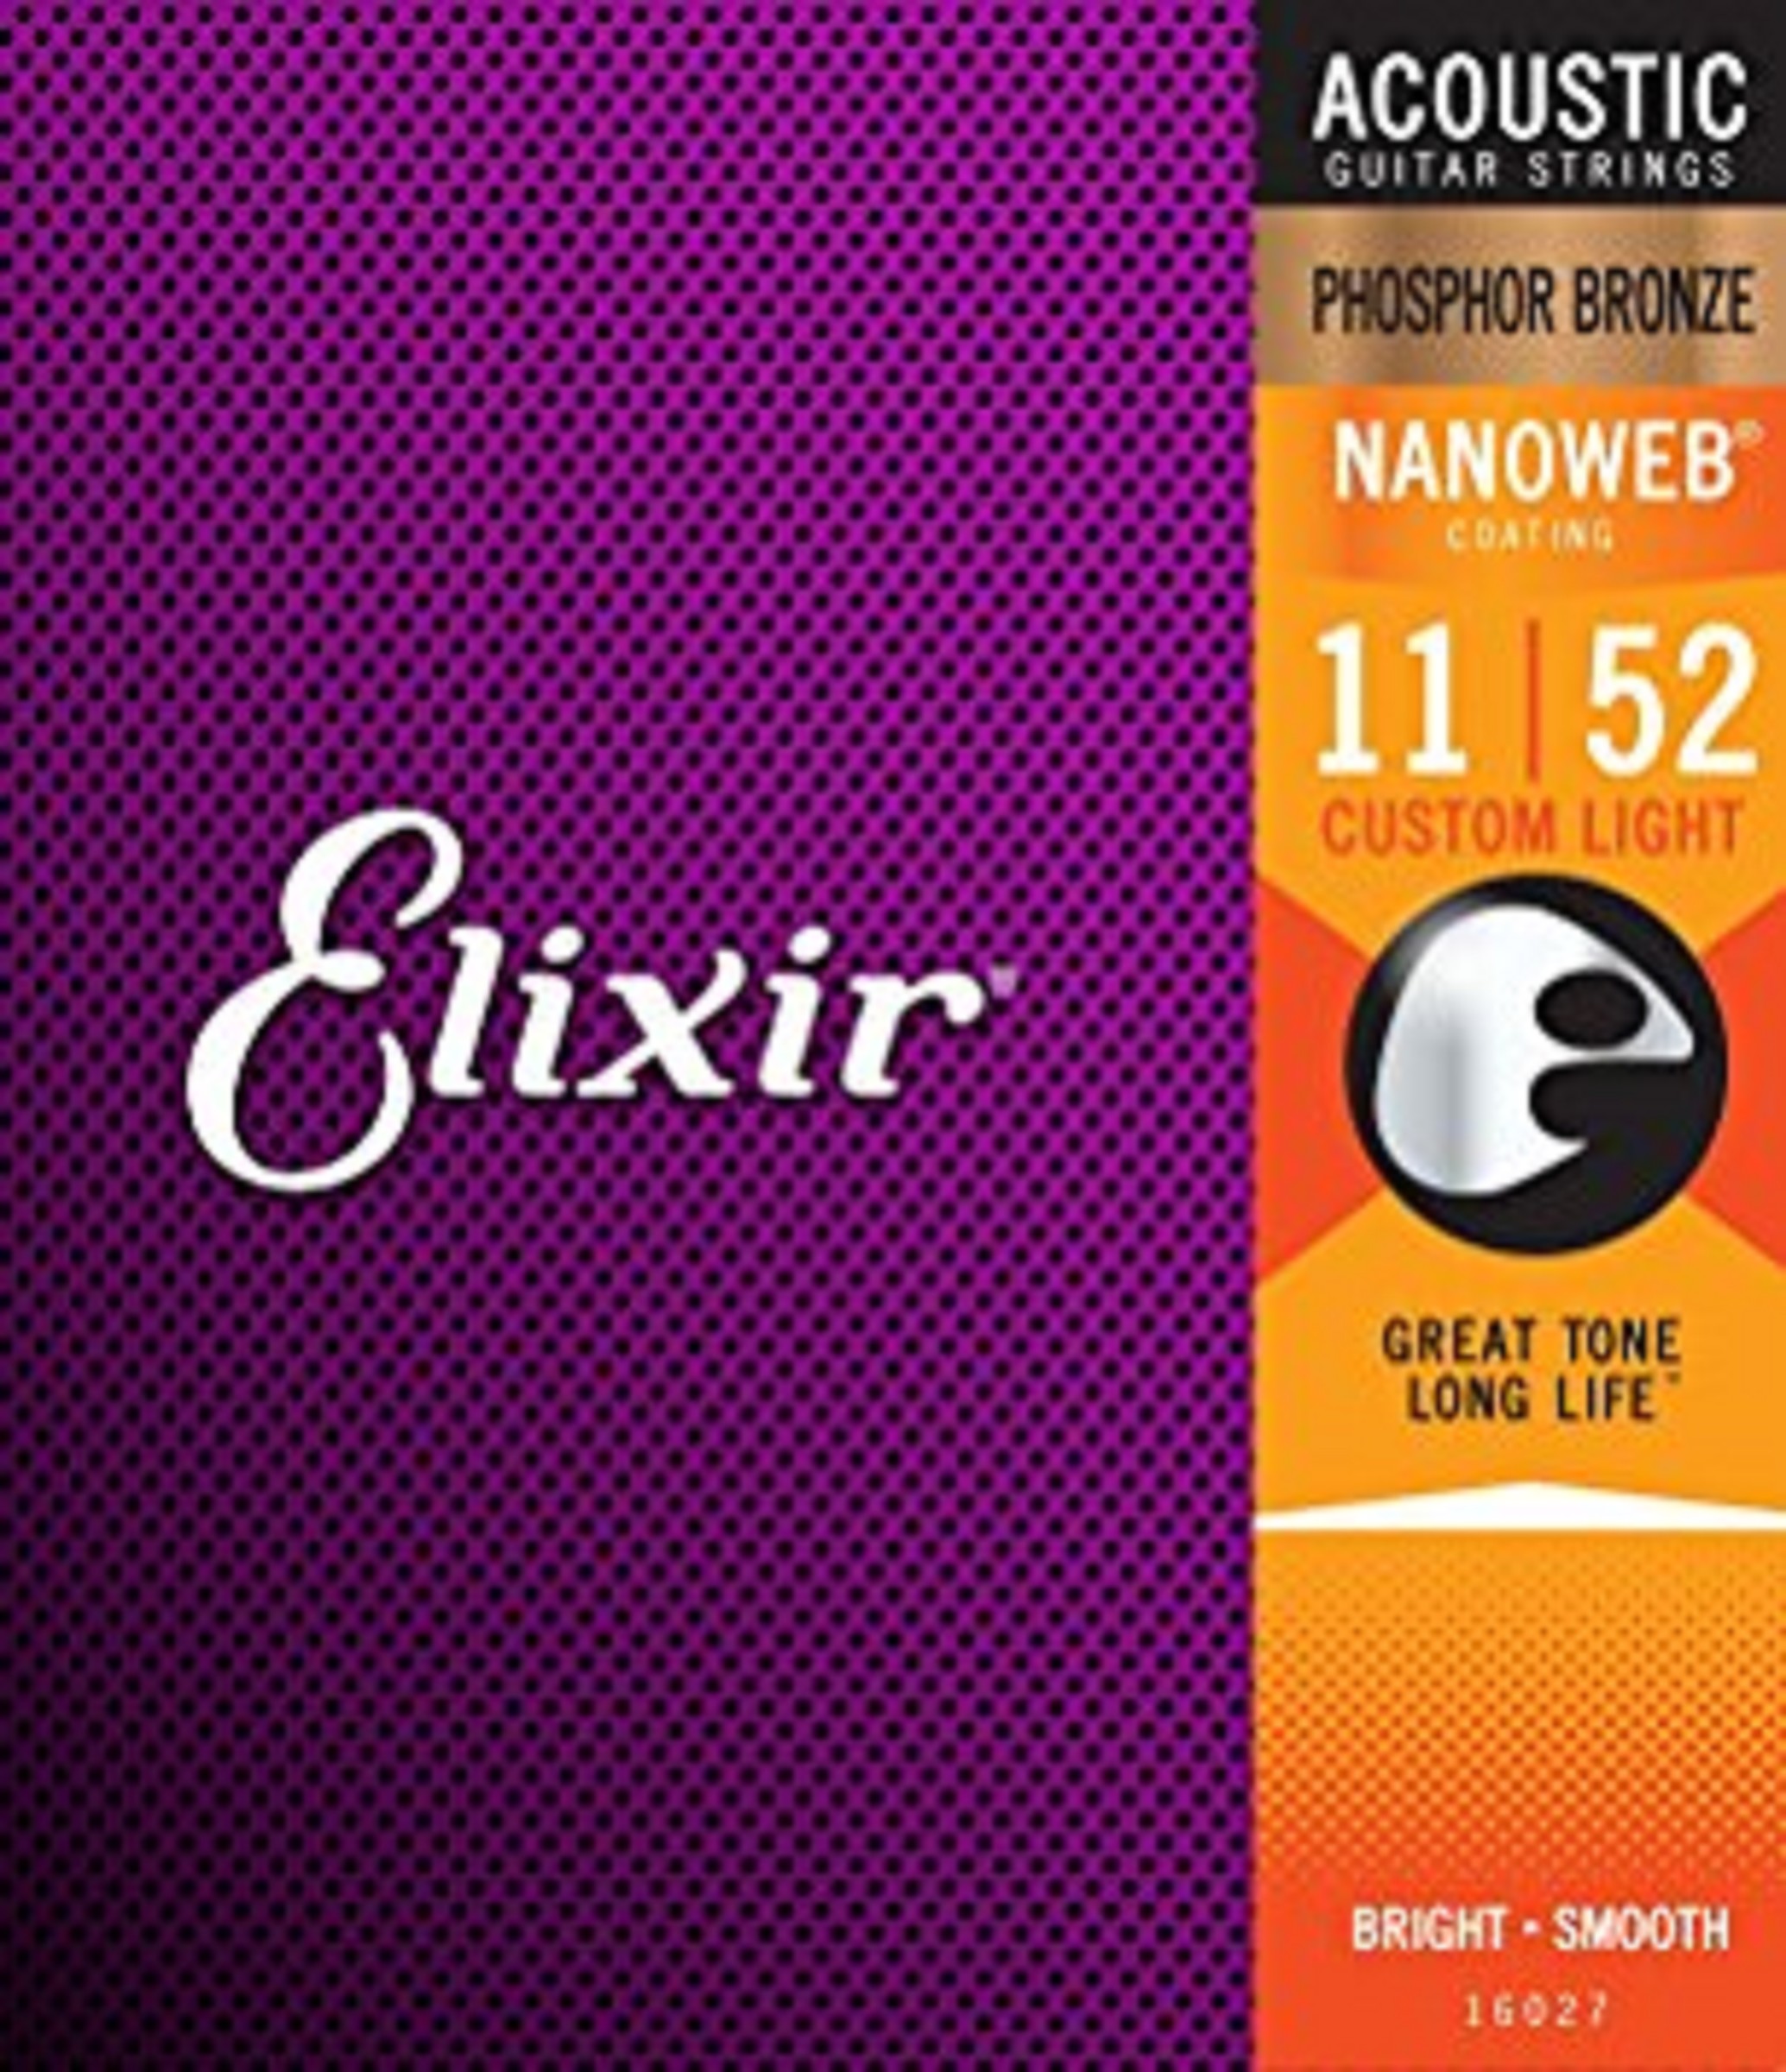 Elixir 16027 Nanoweb Custom Light Phosphor 011-052